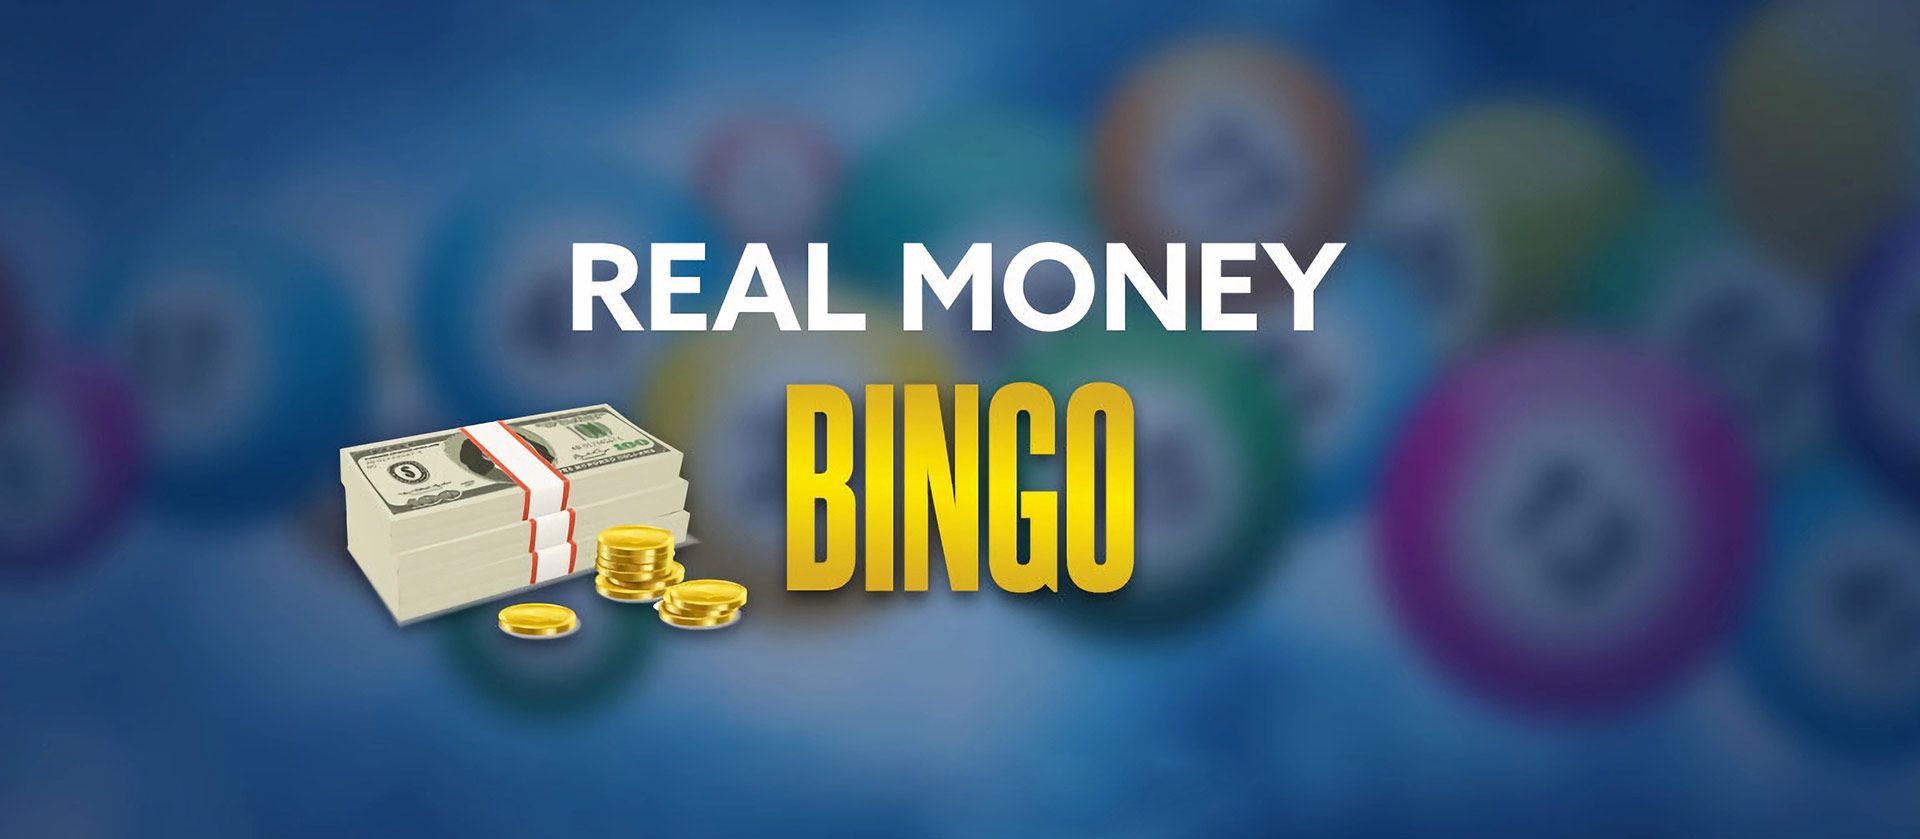 Real money bingo in Canadian online casinos.